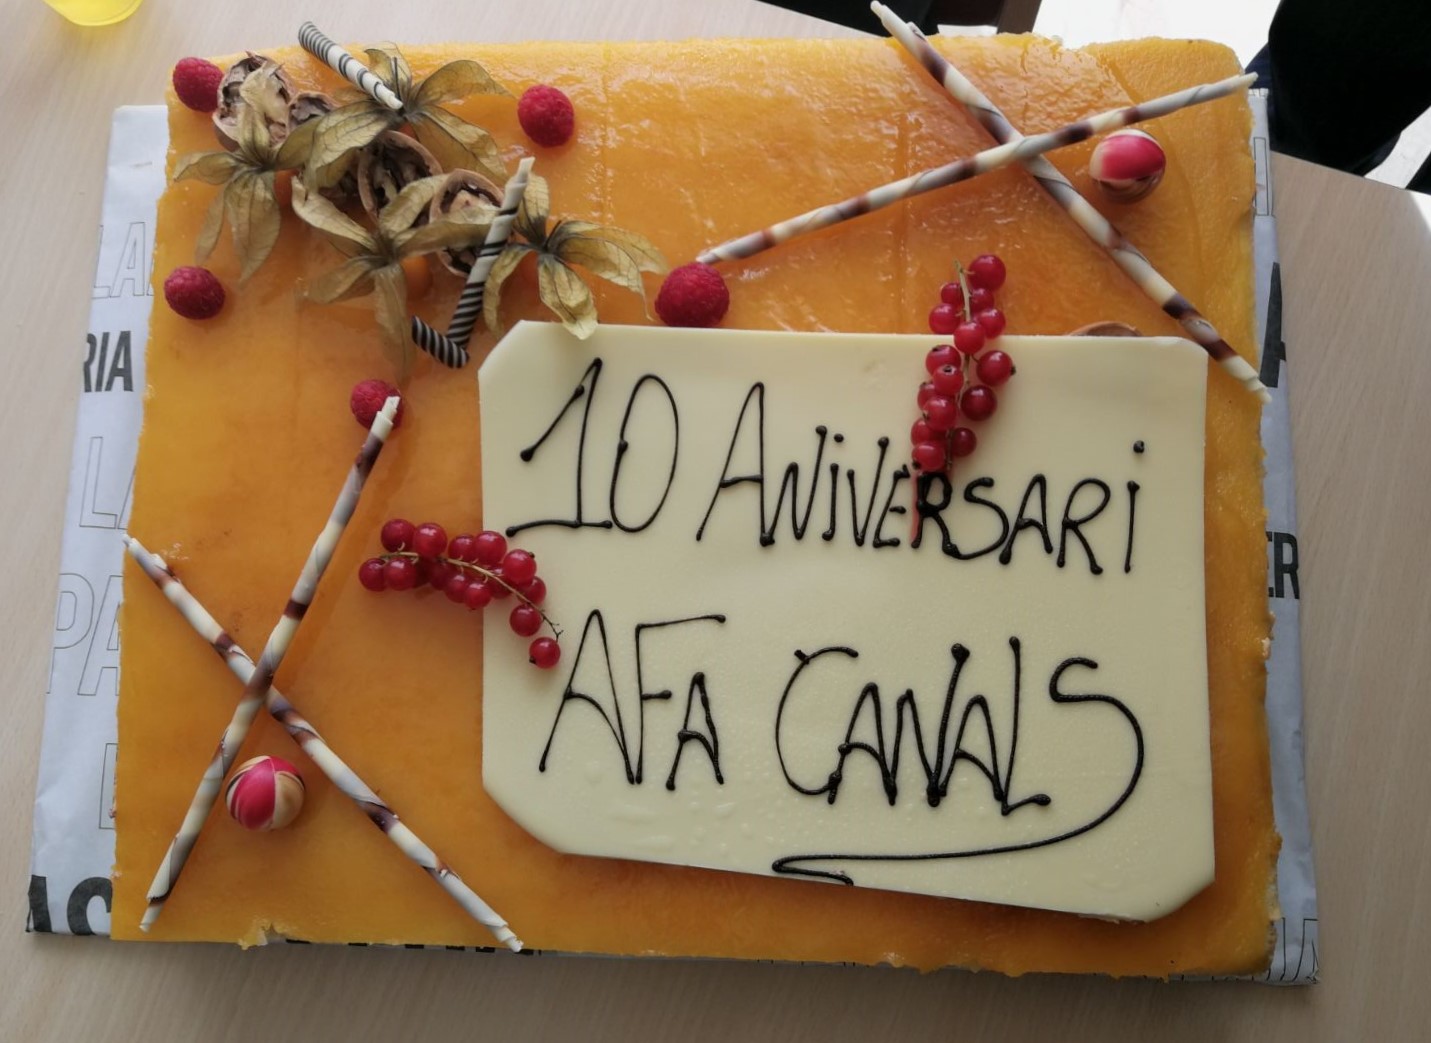 2018.03.13 Canals celebra el 10 aniversari d'AFA